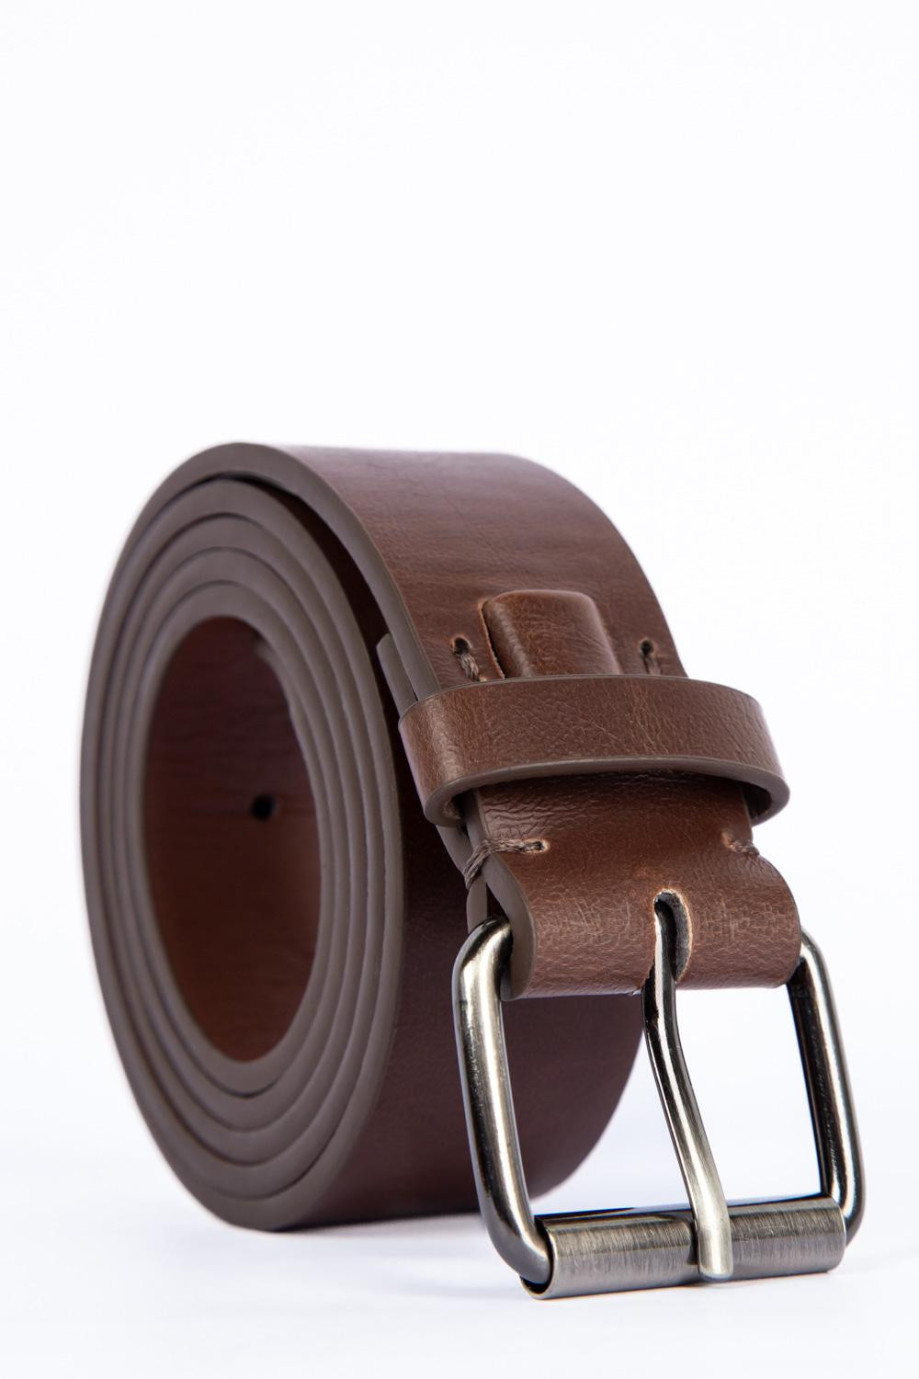 Cinturón sintético café oscuro con hebilla plateada cuadrada